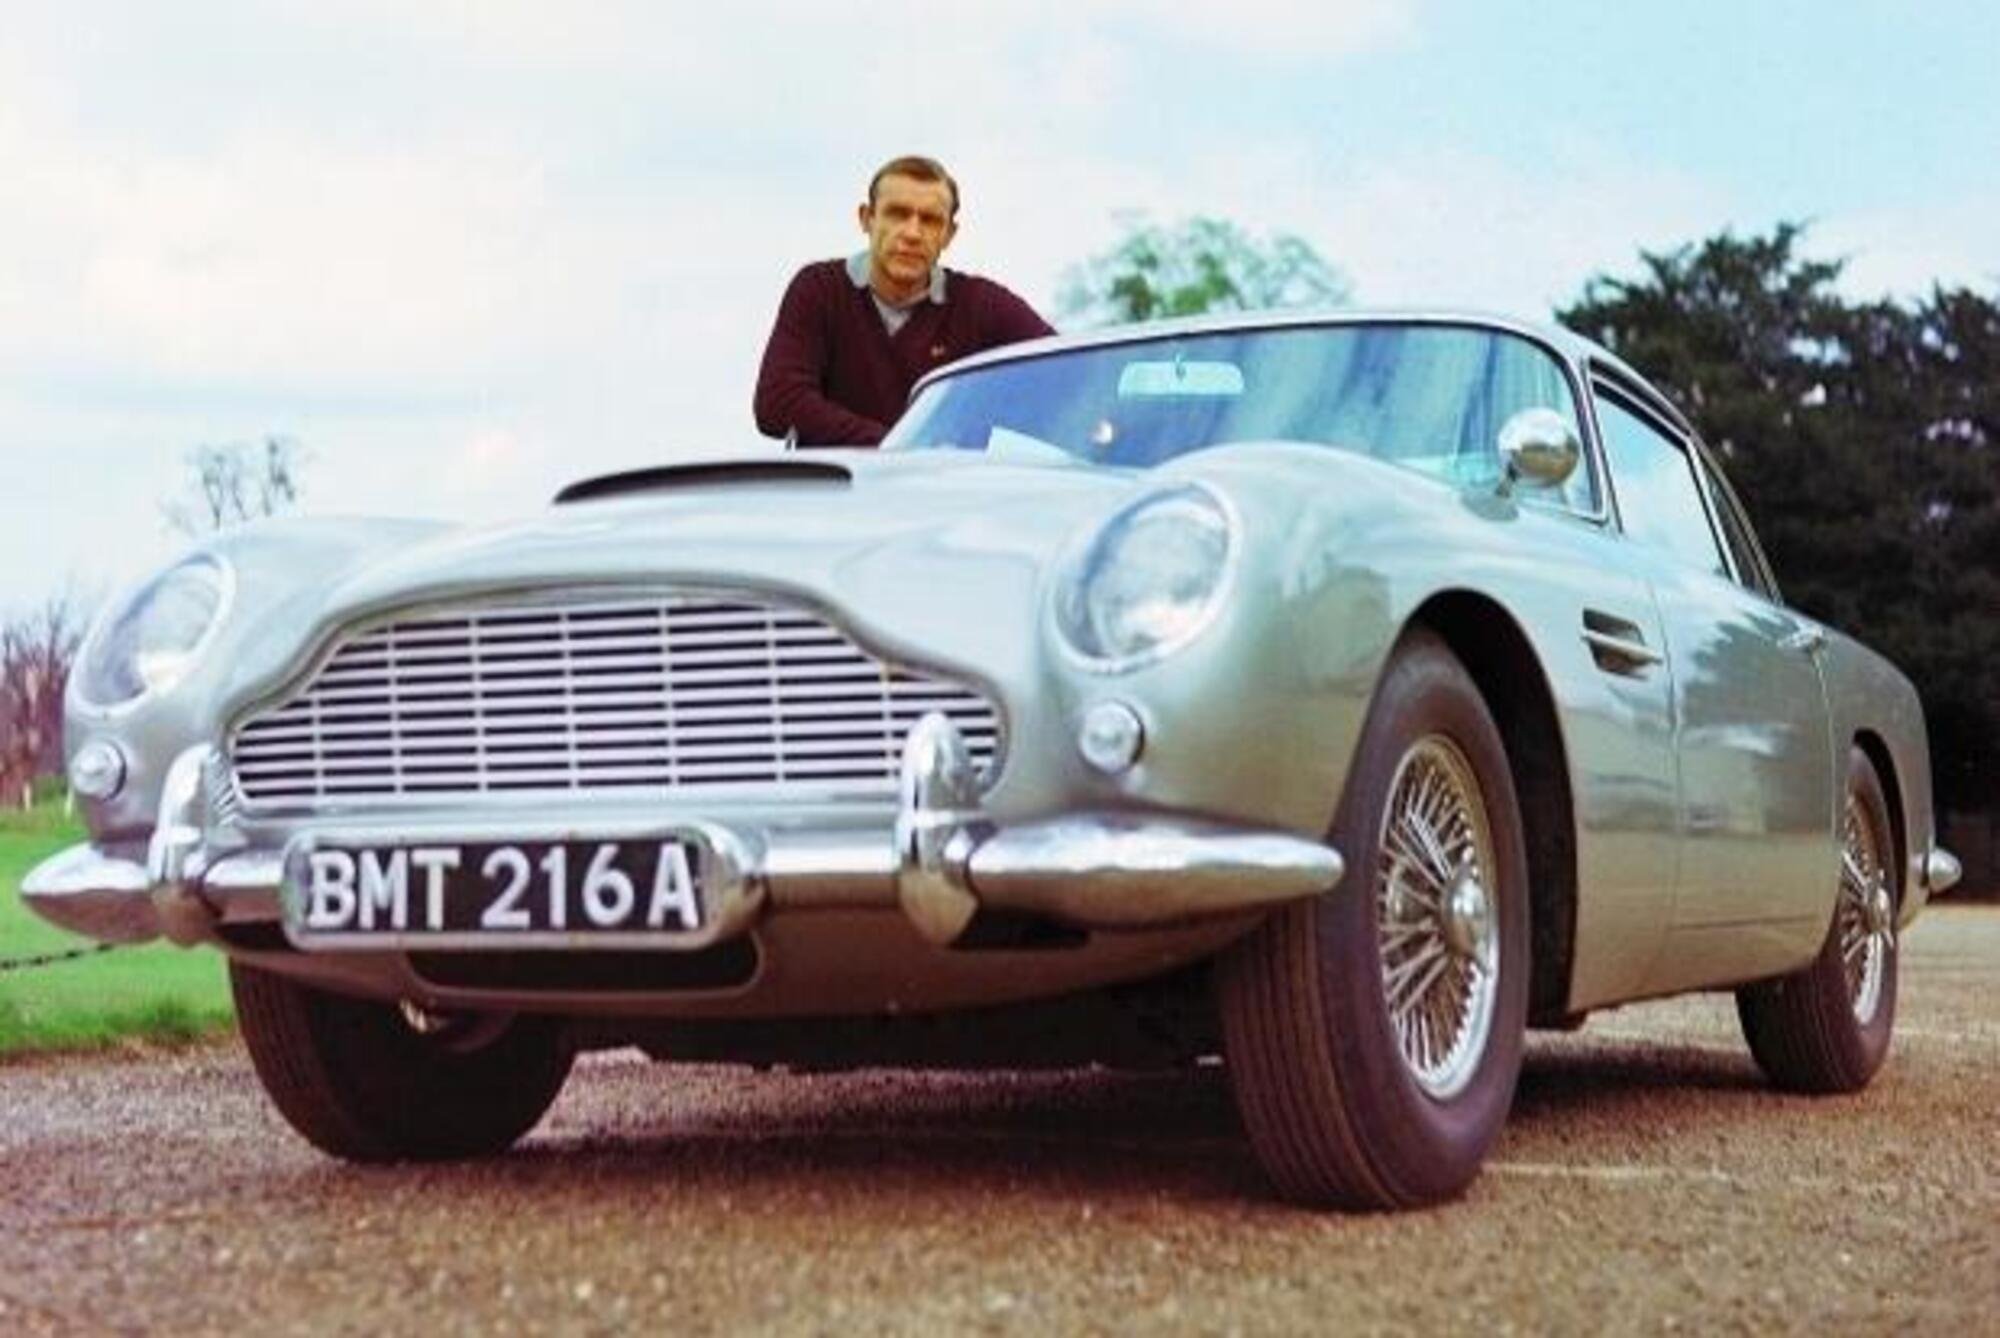 &Egrave; morto Sean Connery, nella leggenda con 007 e quelle auto da sogno